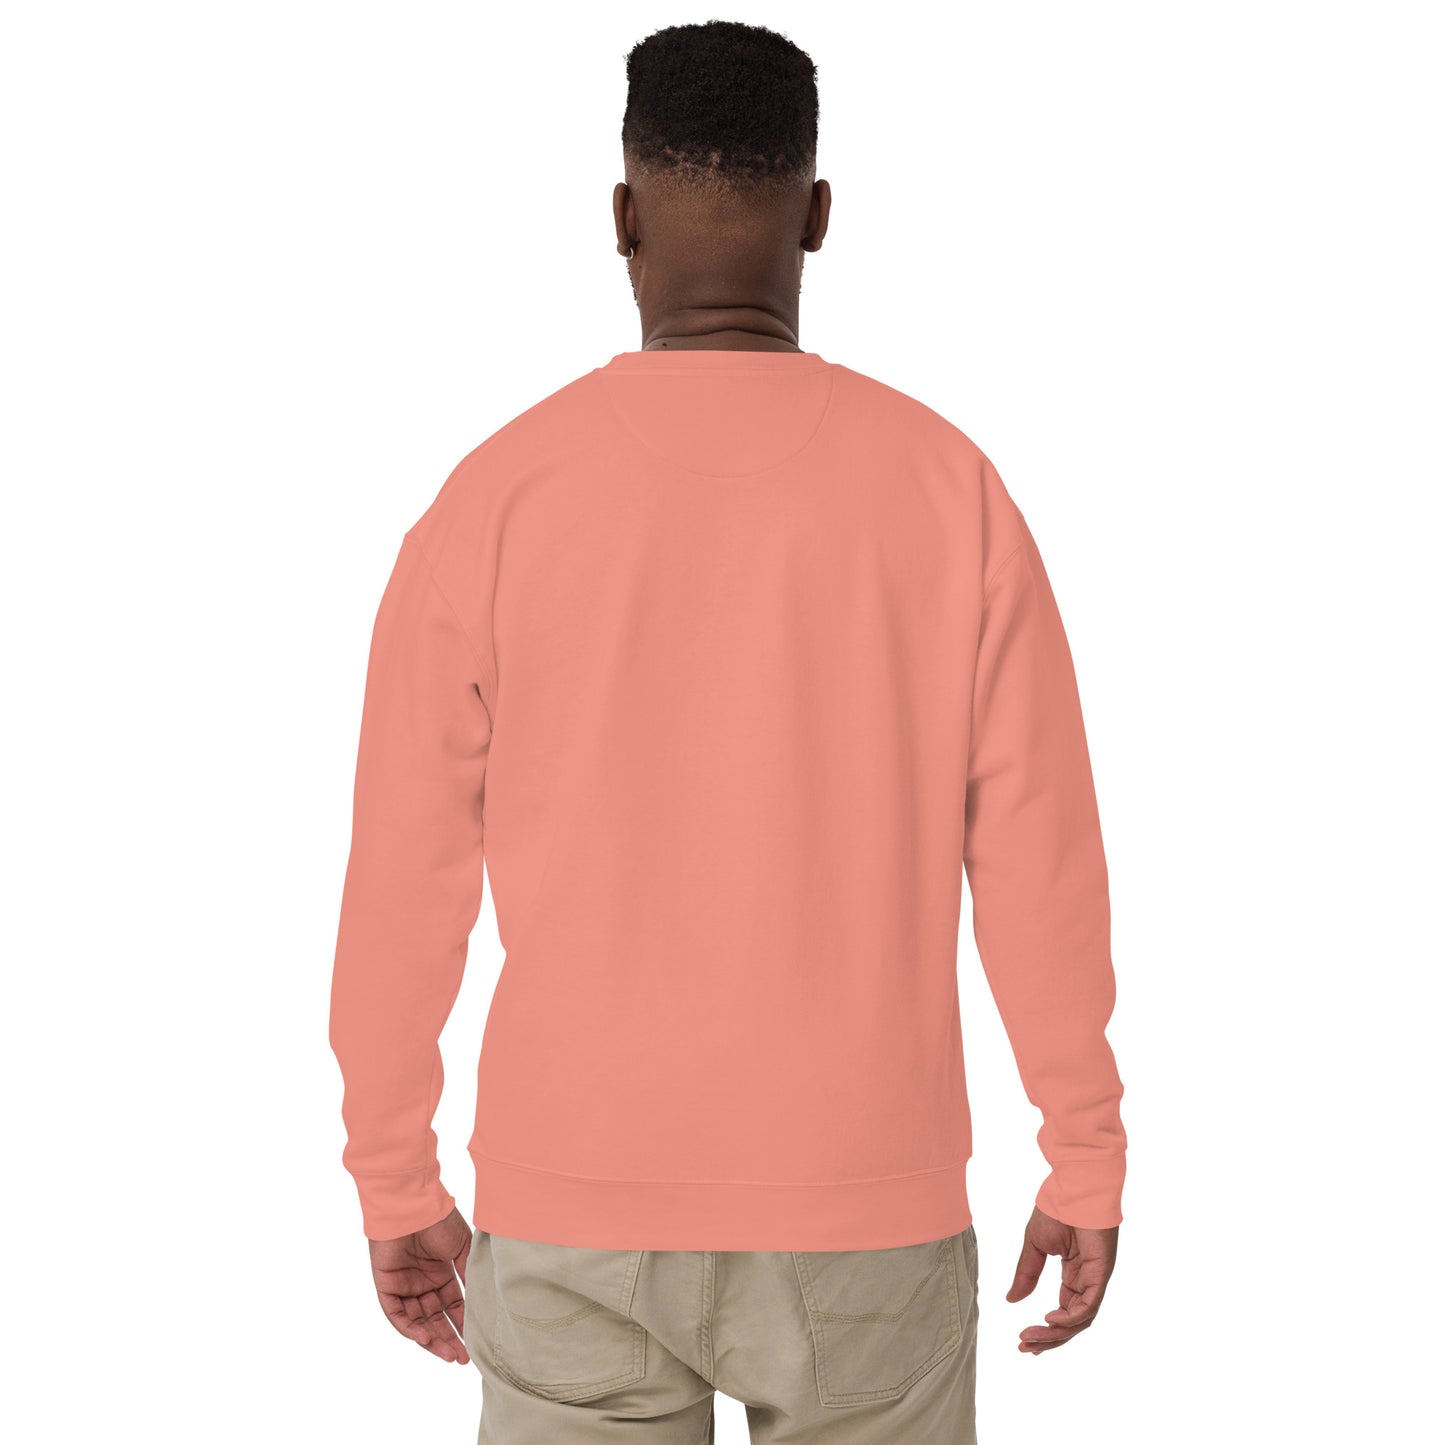 On Wednesdays We Wear Pink Unisex Premium Sweatshirt